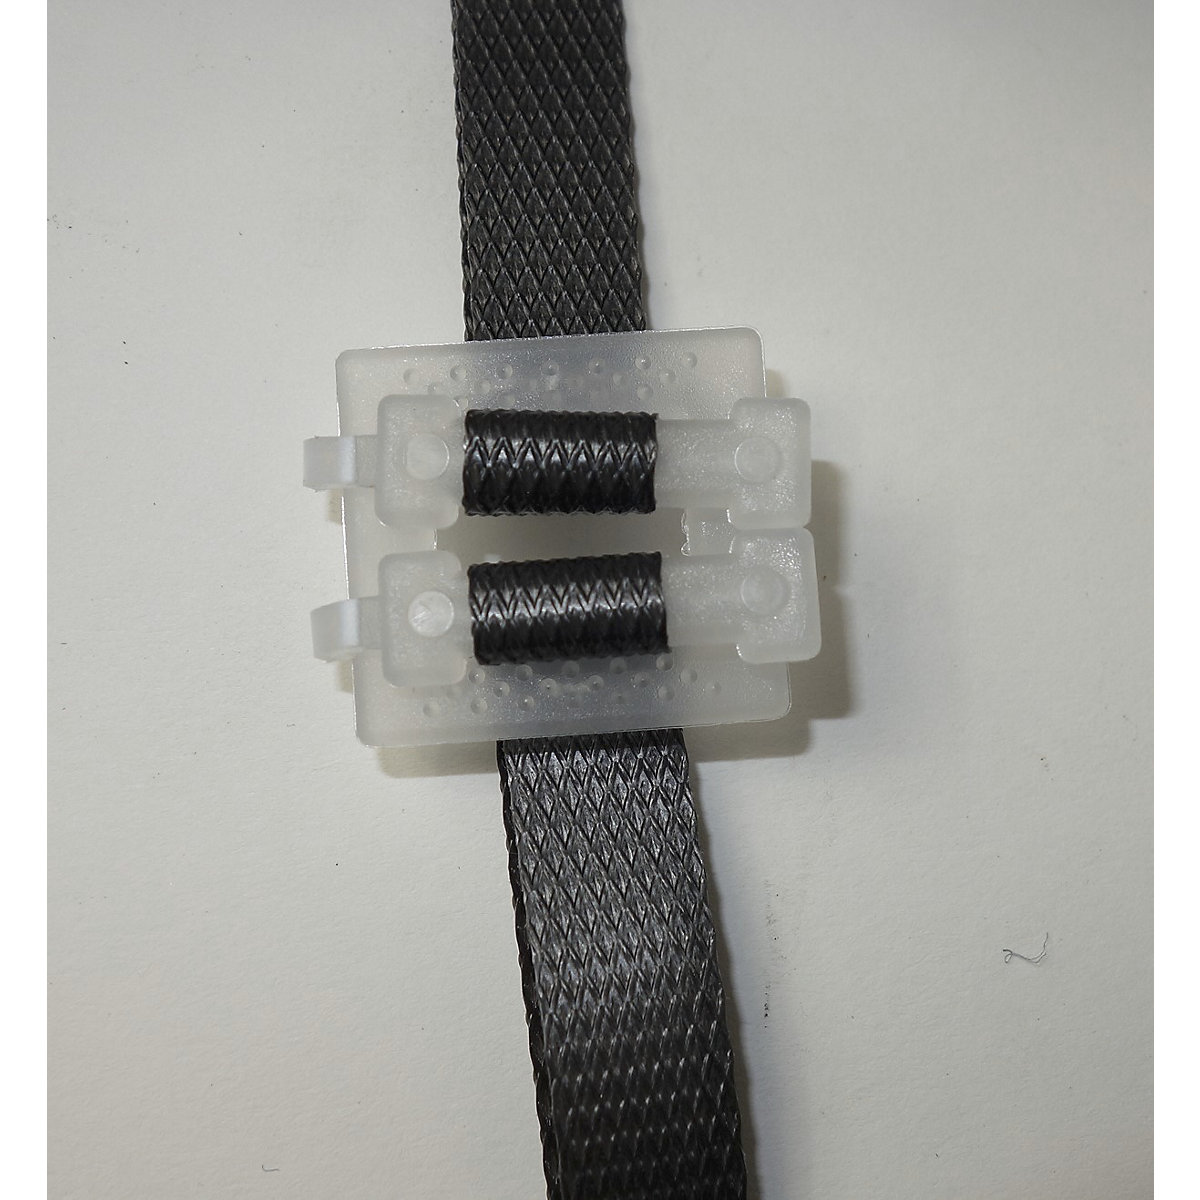 EUROKRAFTbasic – Buckle fasteners, plastic (Product illustration 2)